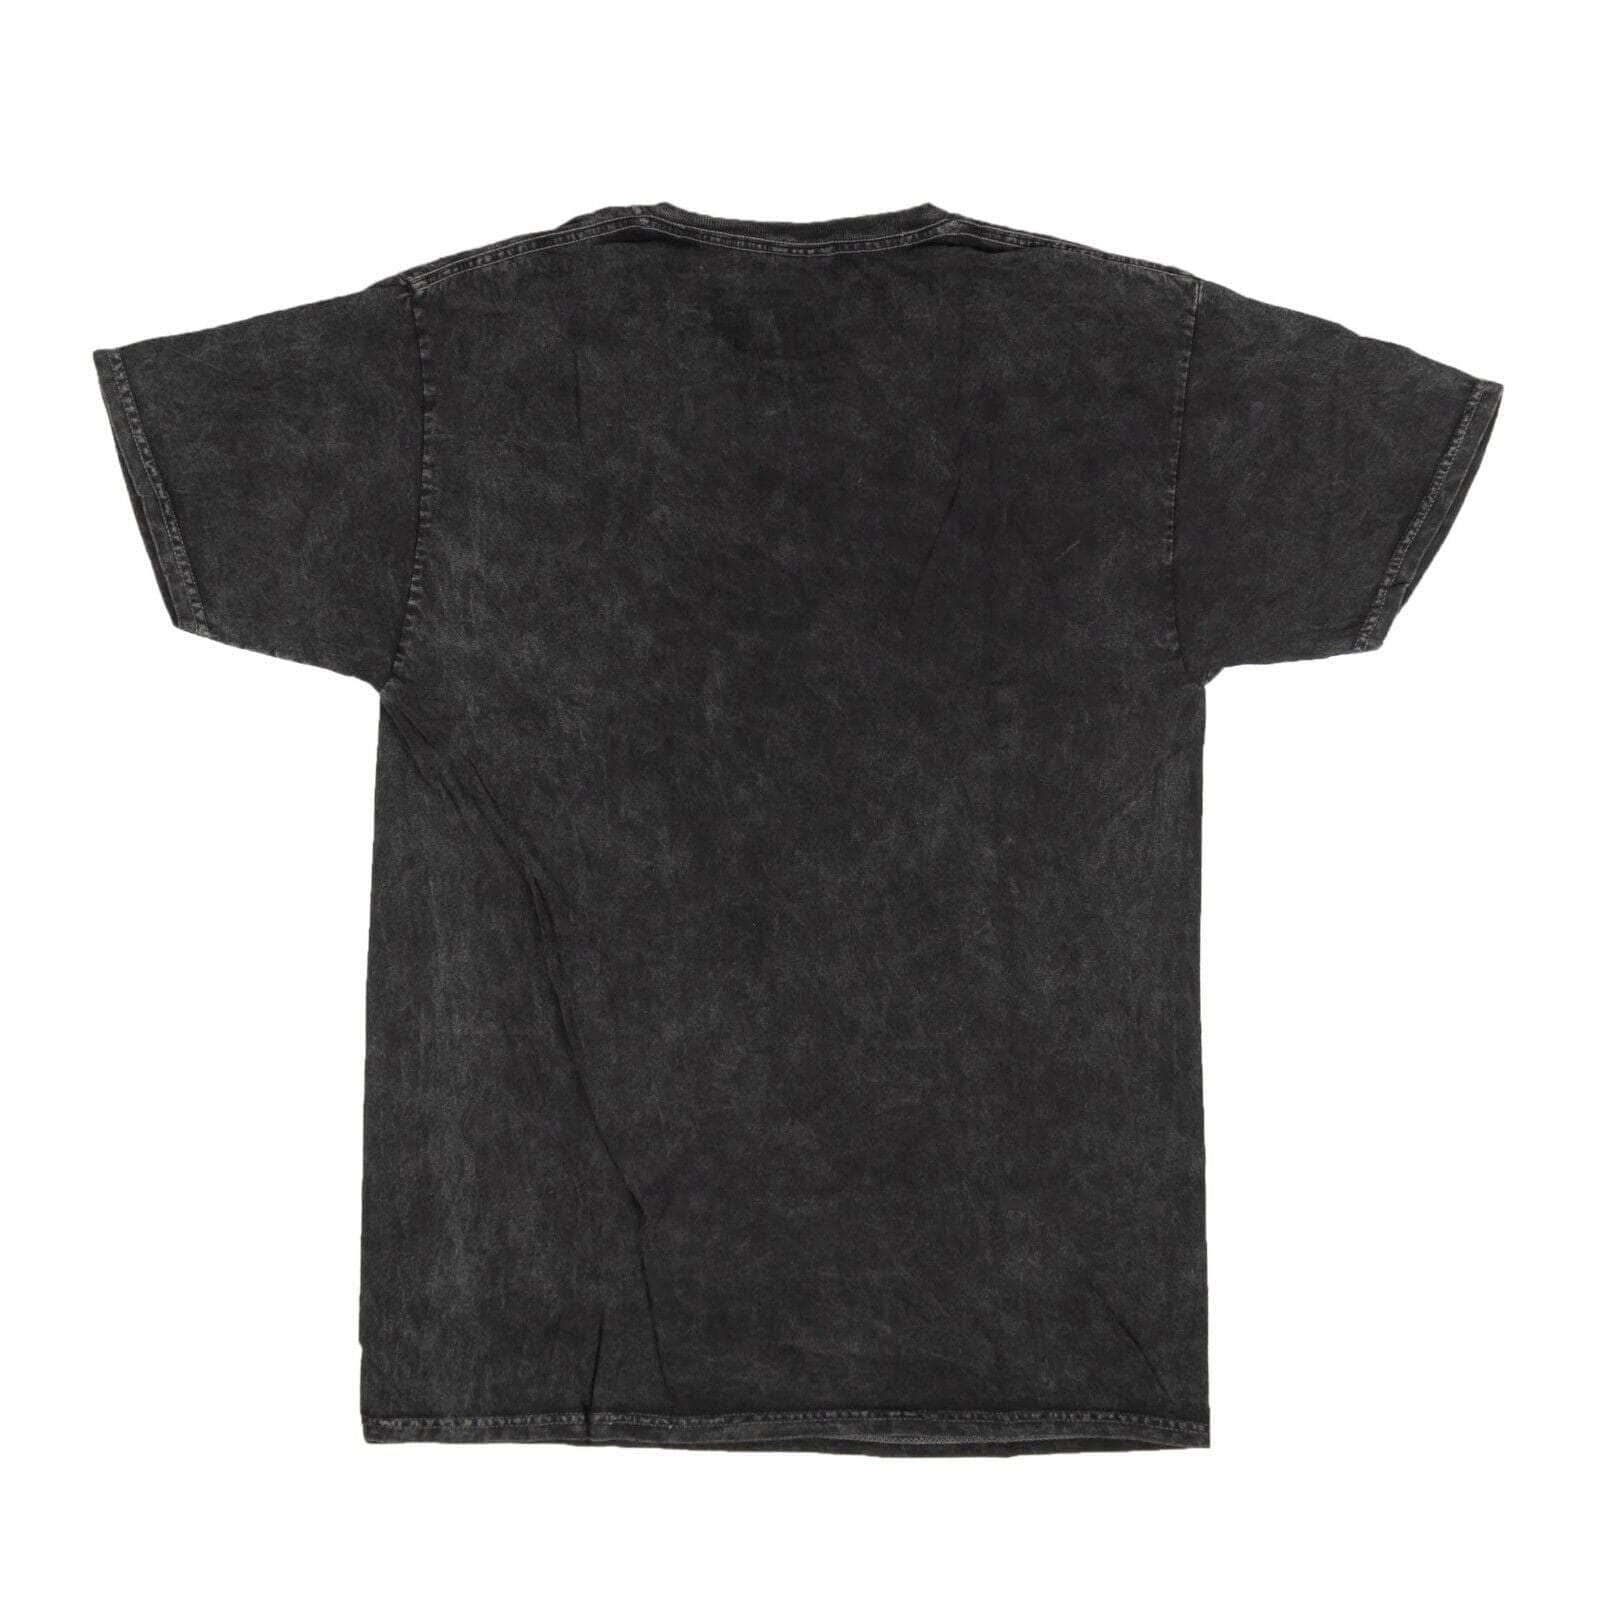 NBA Men's T-Shirt - Black - L